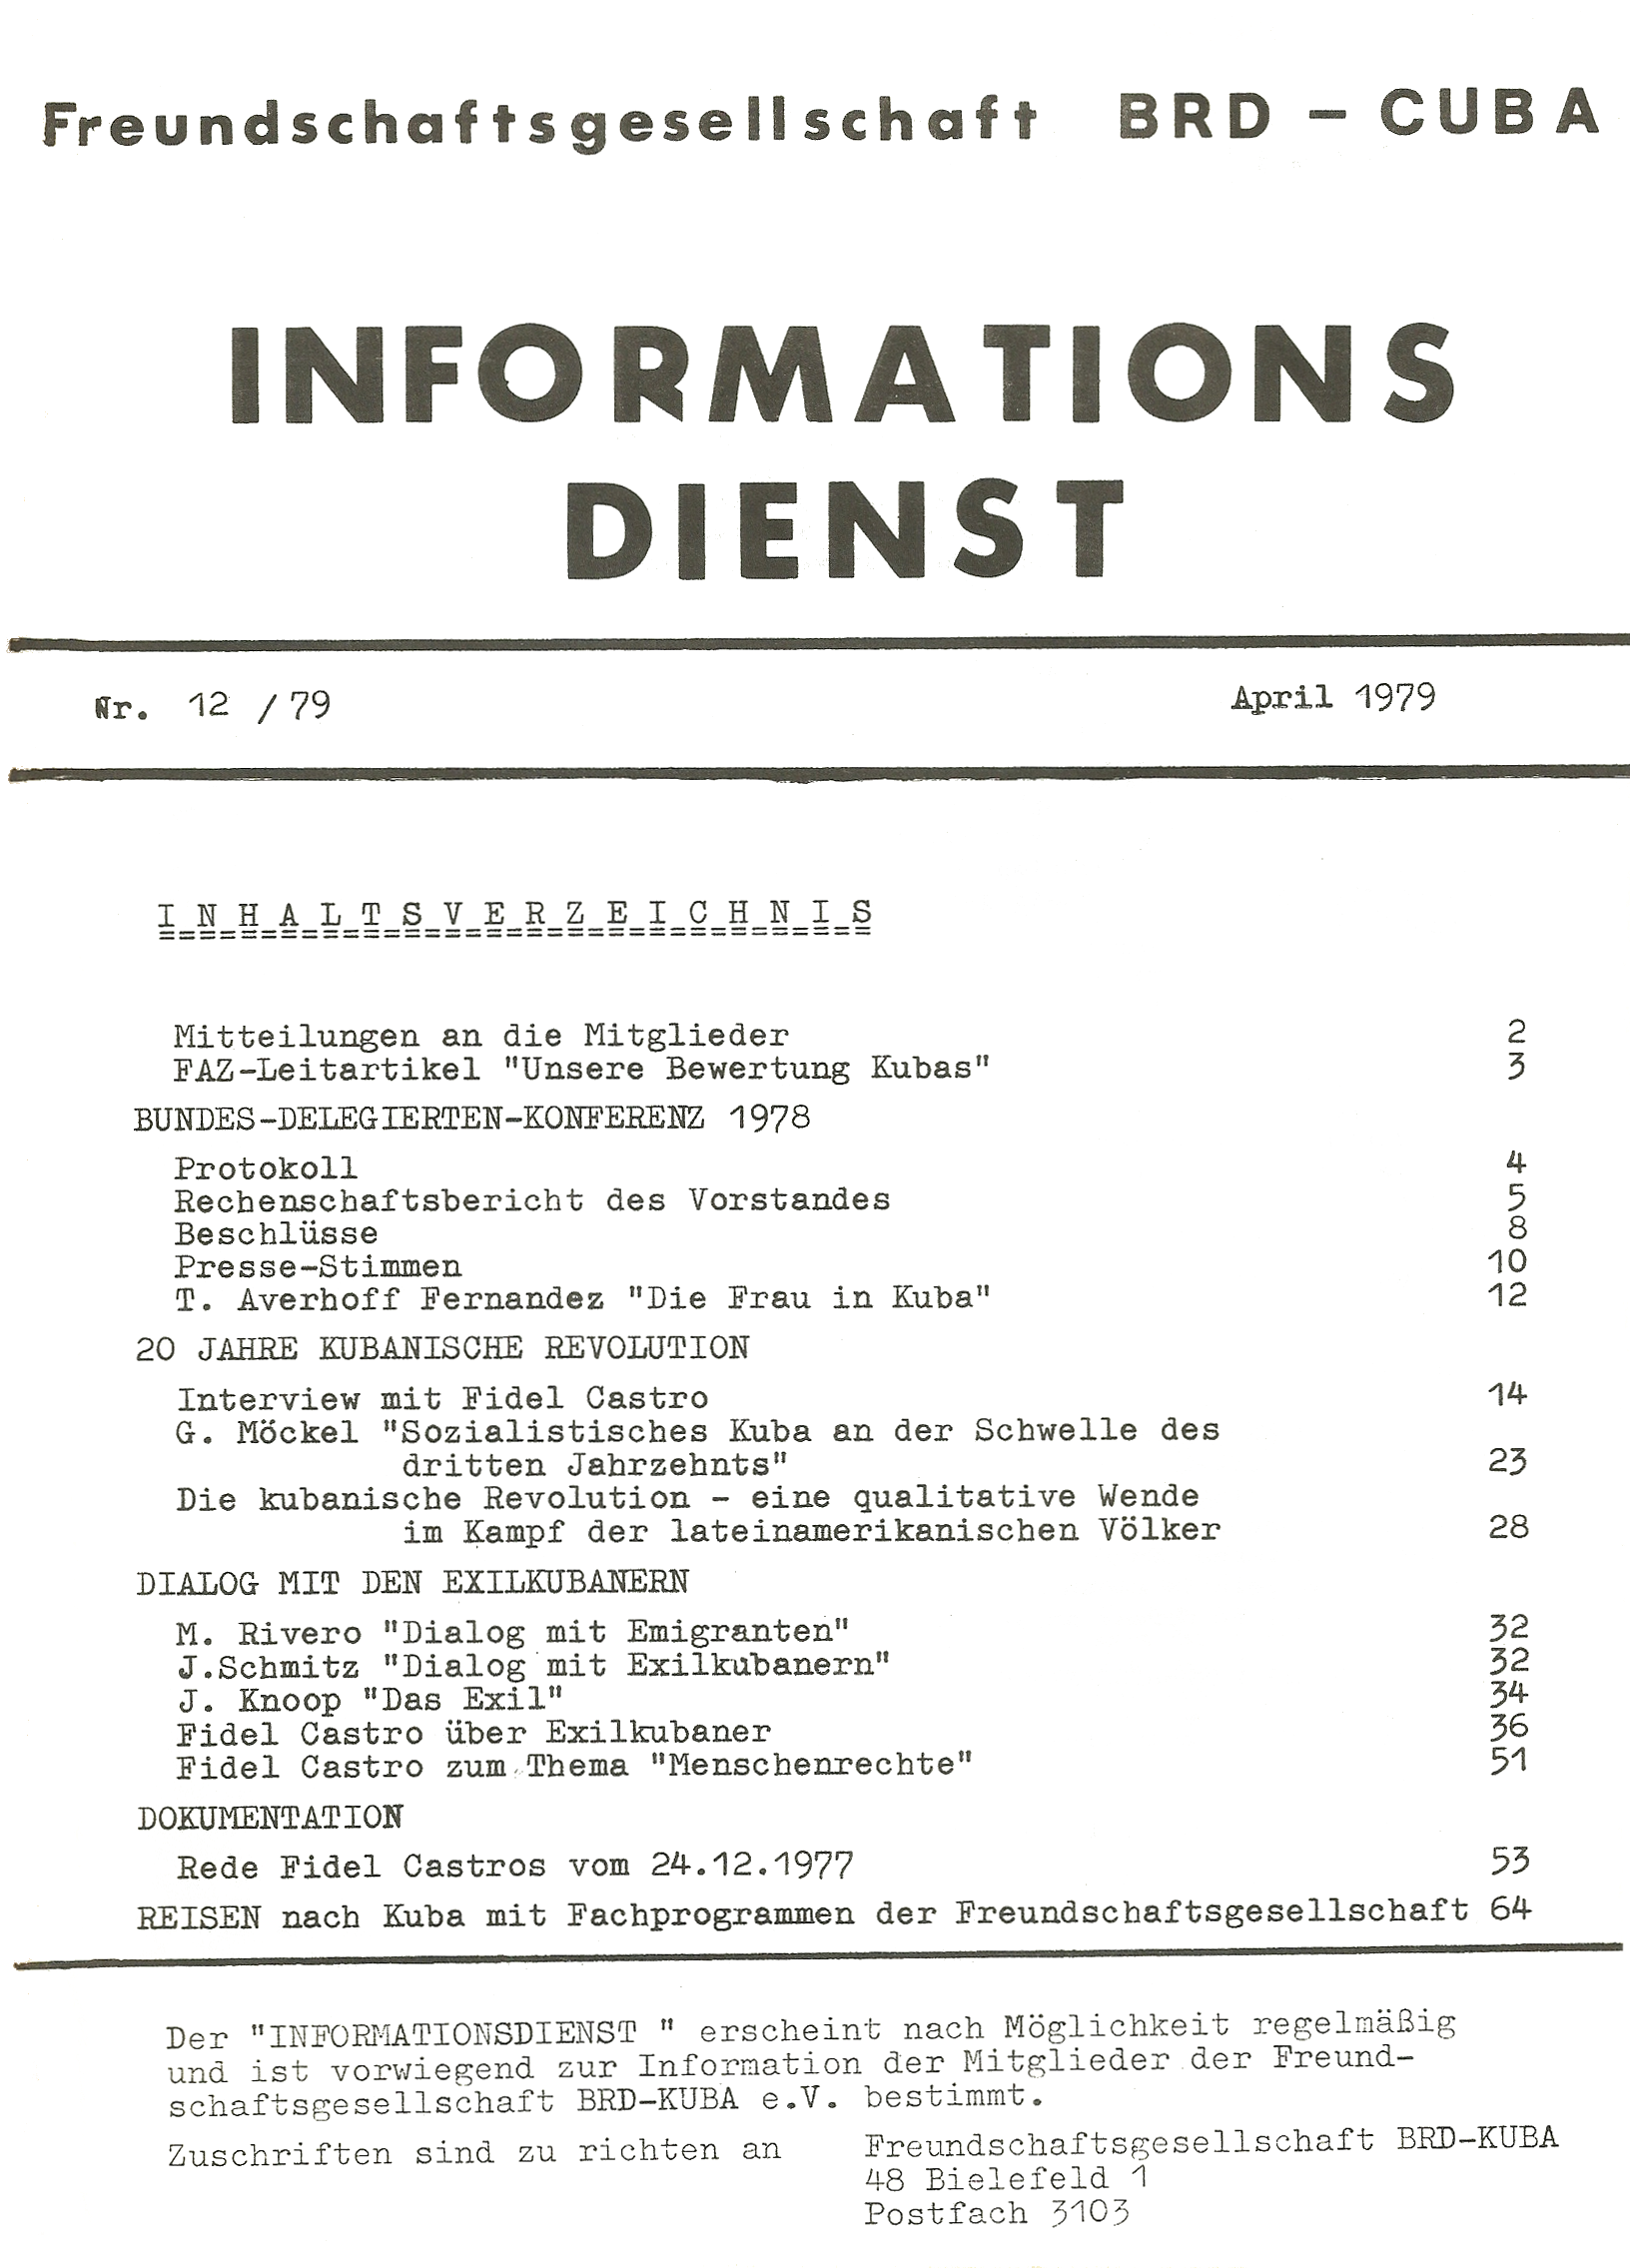 Freundschaftsgesellschaft BRD-Cuba - Informationsdienst 2-1979